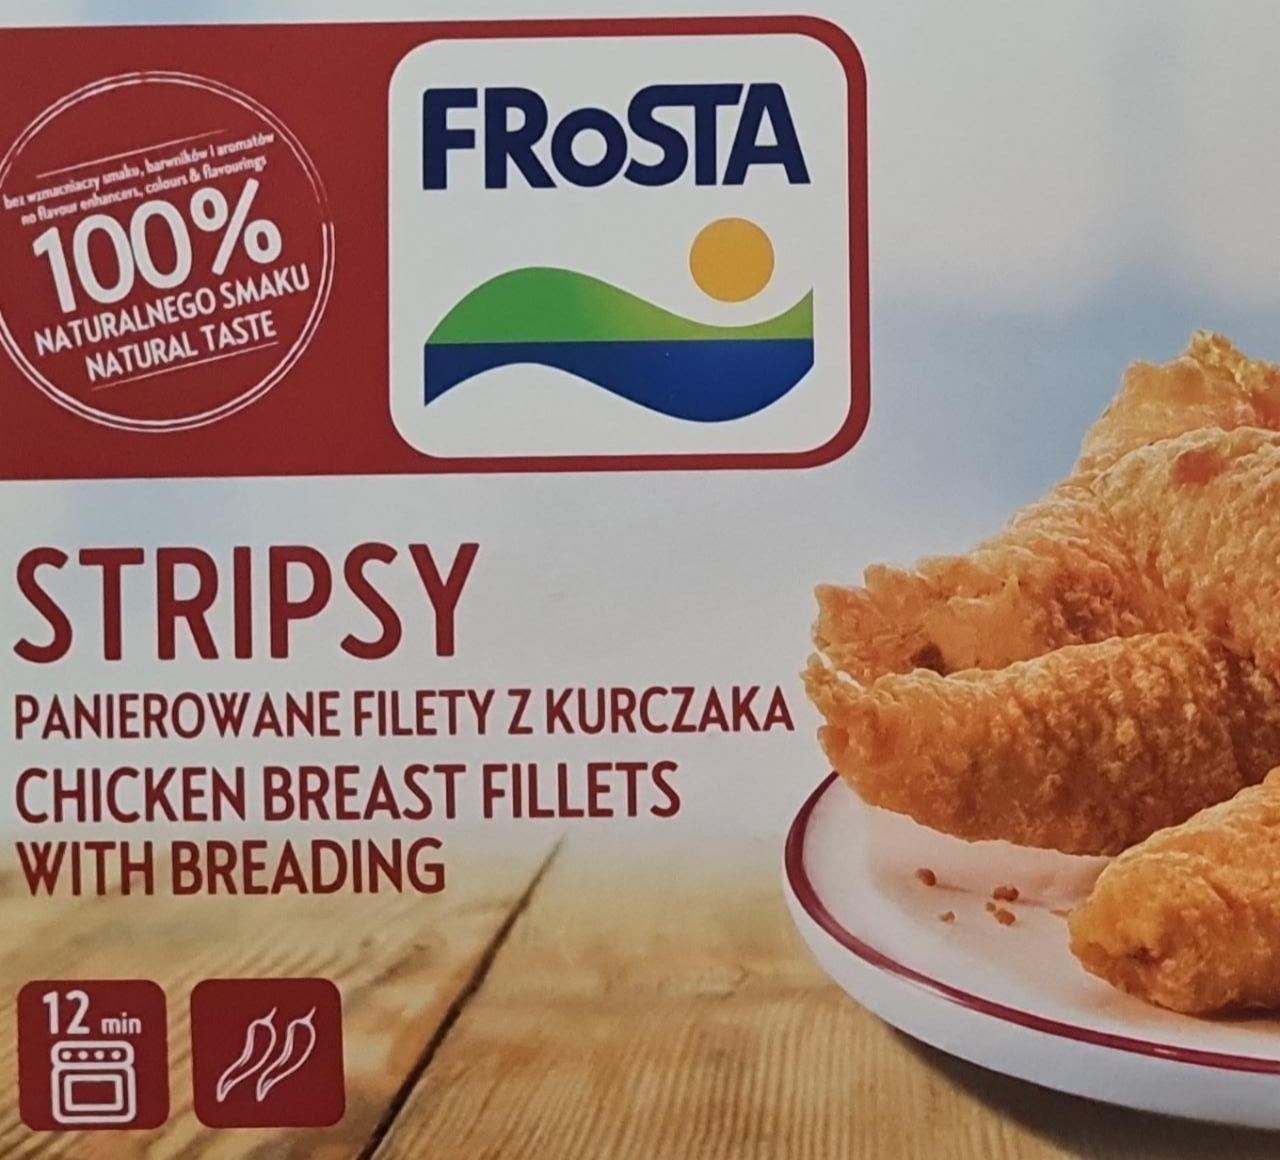 Zdjęcia - Stripsy Panierowane filety z kurczaka FRoSTA